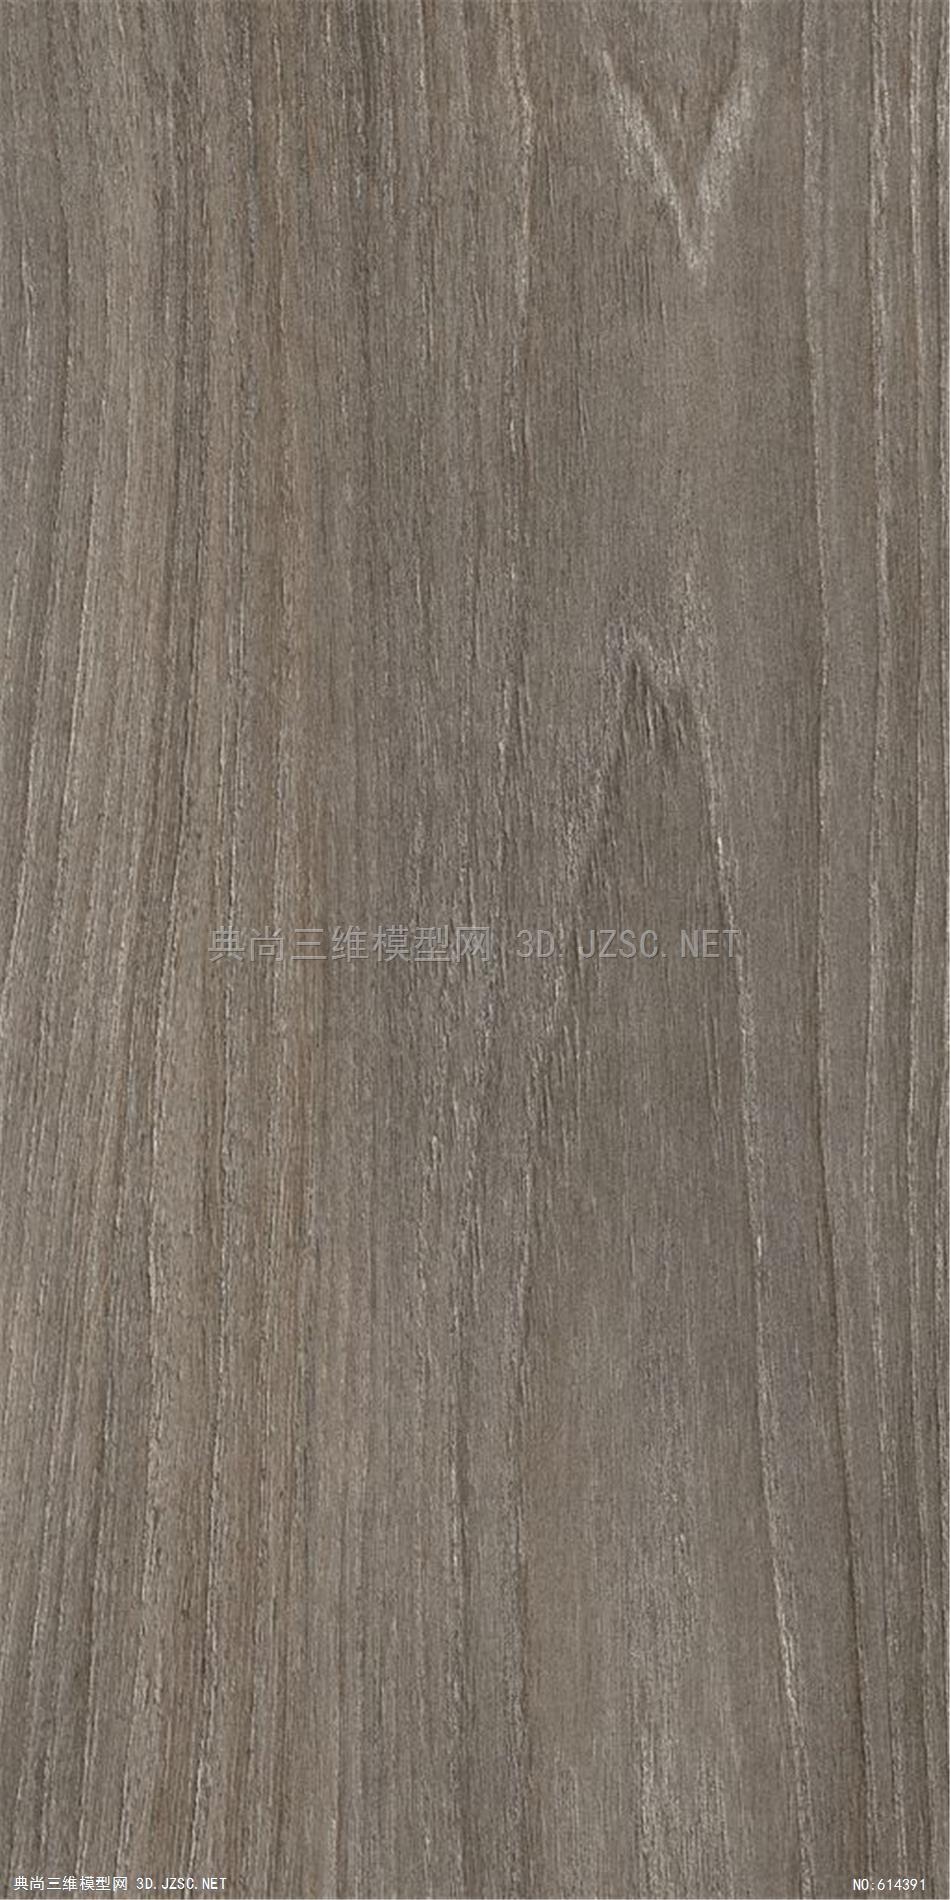 木饰面 木纹 木材  高清材质贴图 (283)